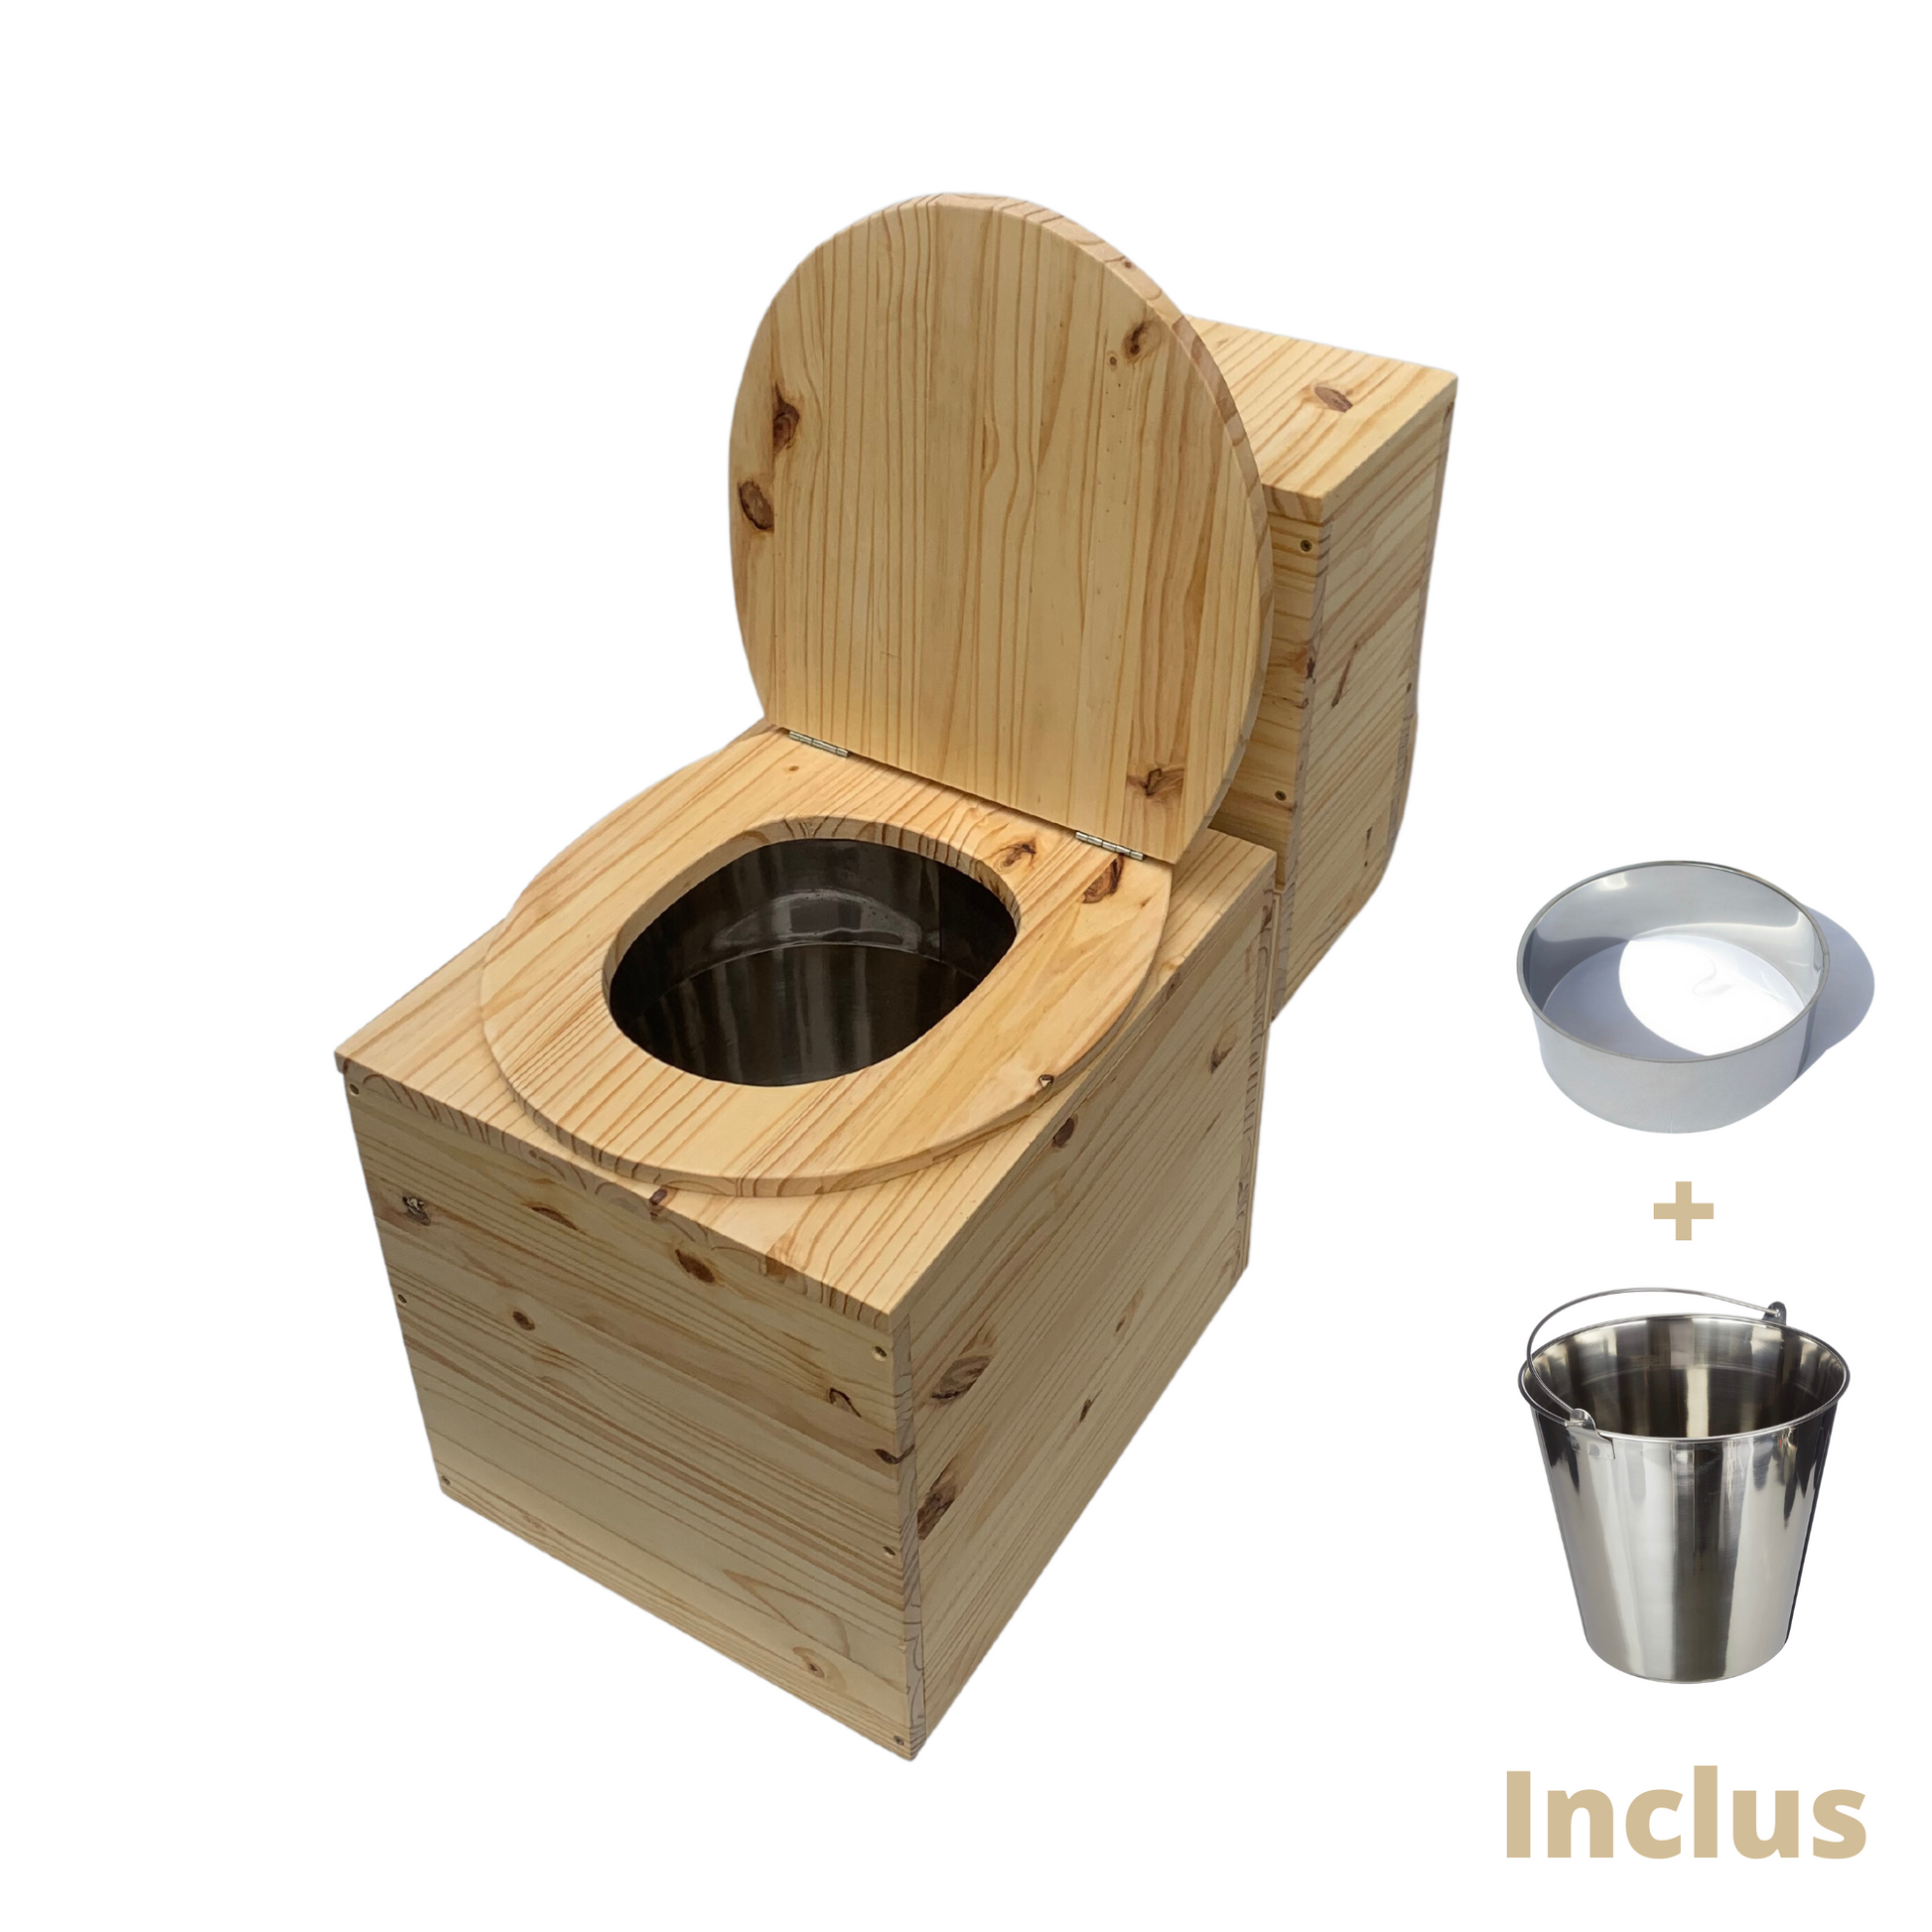 Toilette sèche avec bac à copeaux de bois - Modèle vide - wc